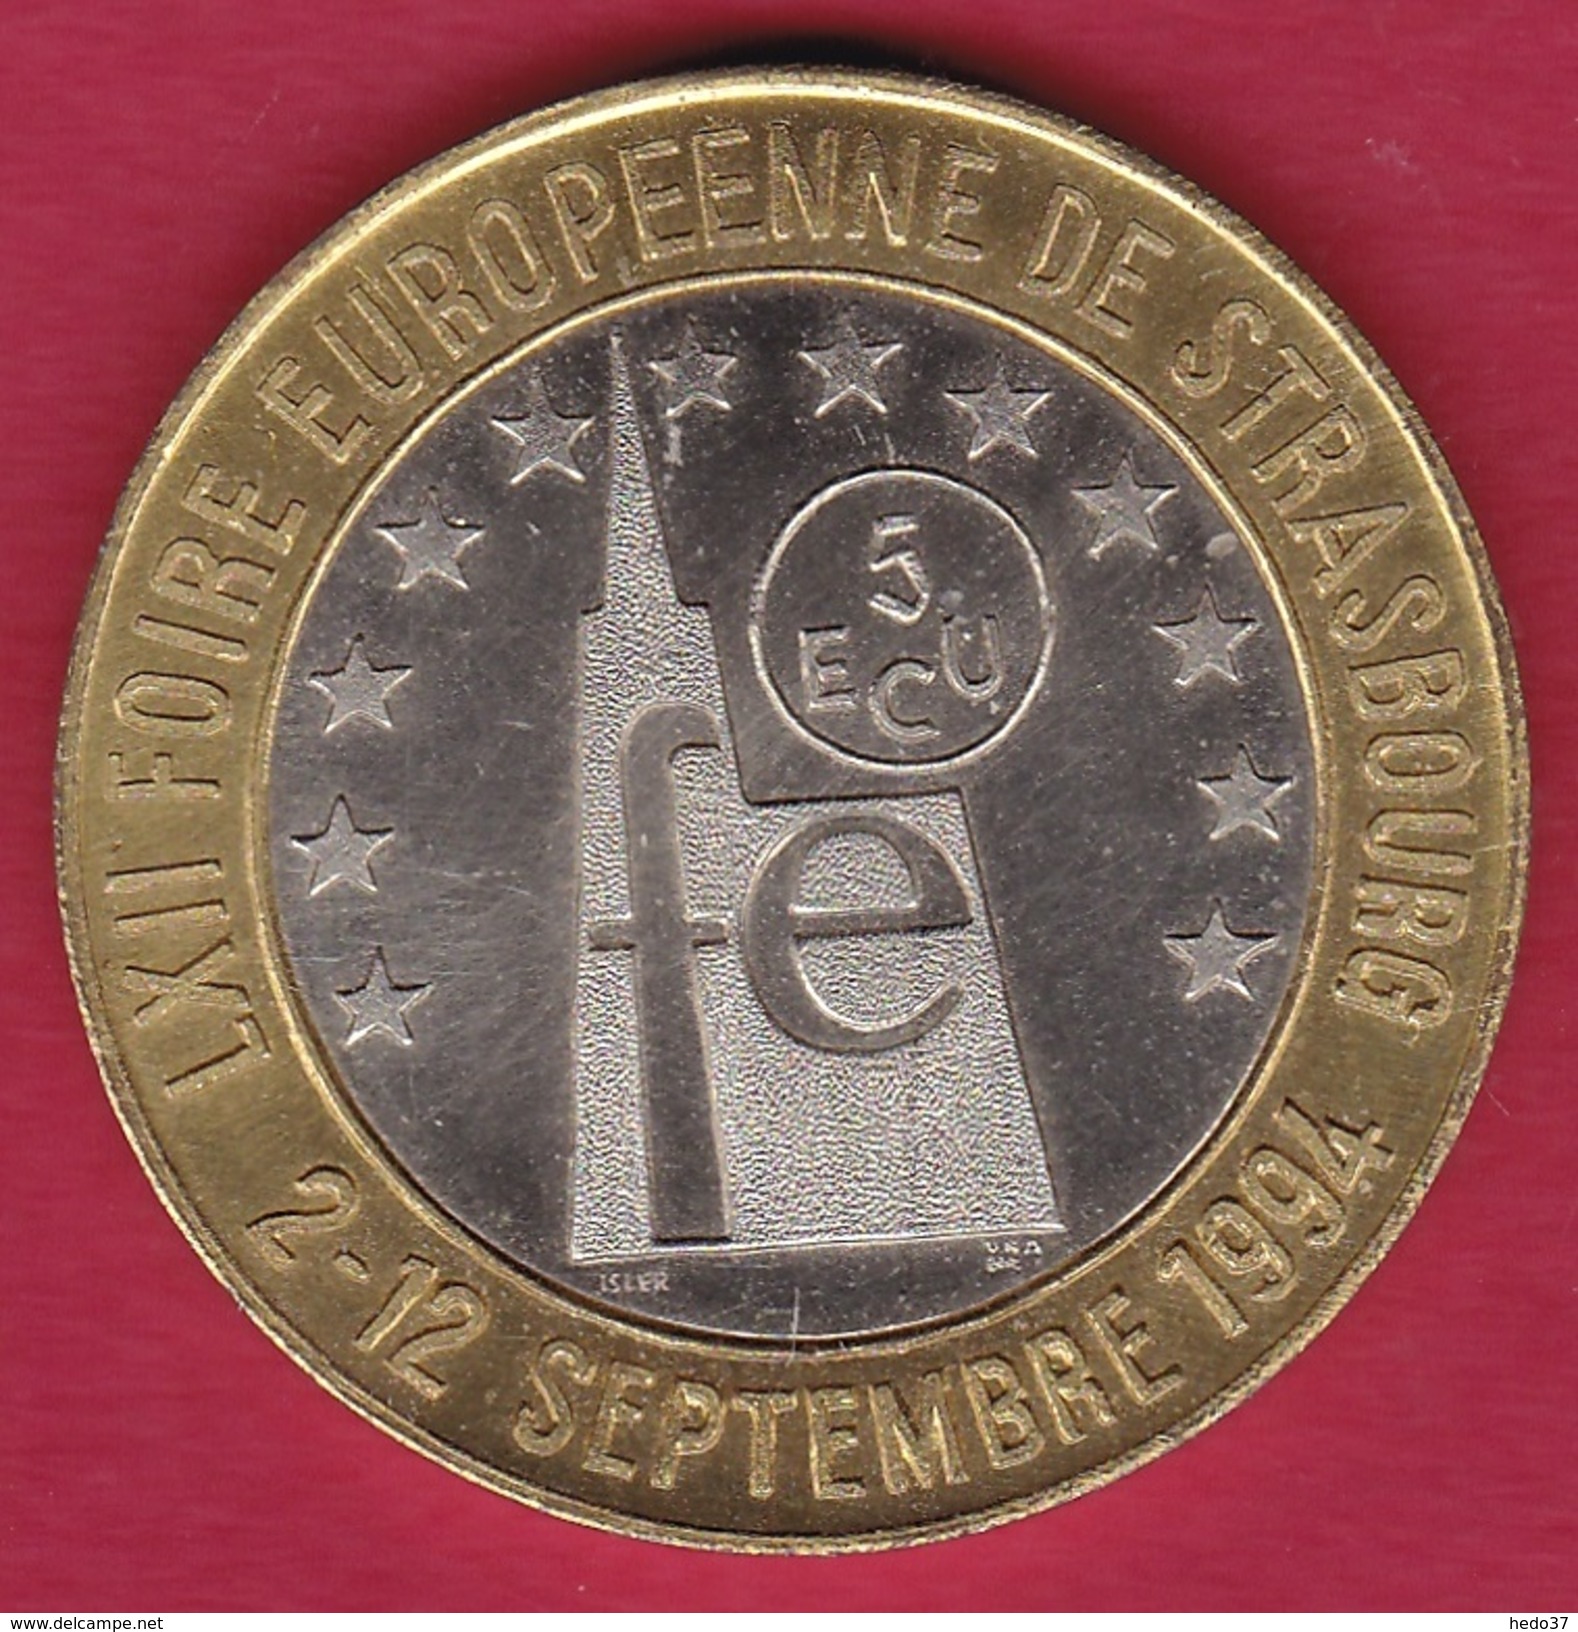 France - Strasbourg - 5 écus - 1994 - Euros Des Villes